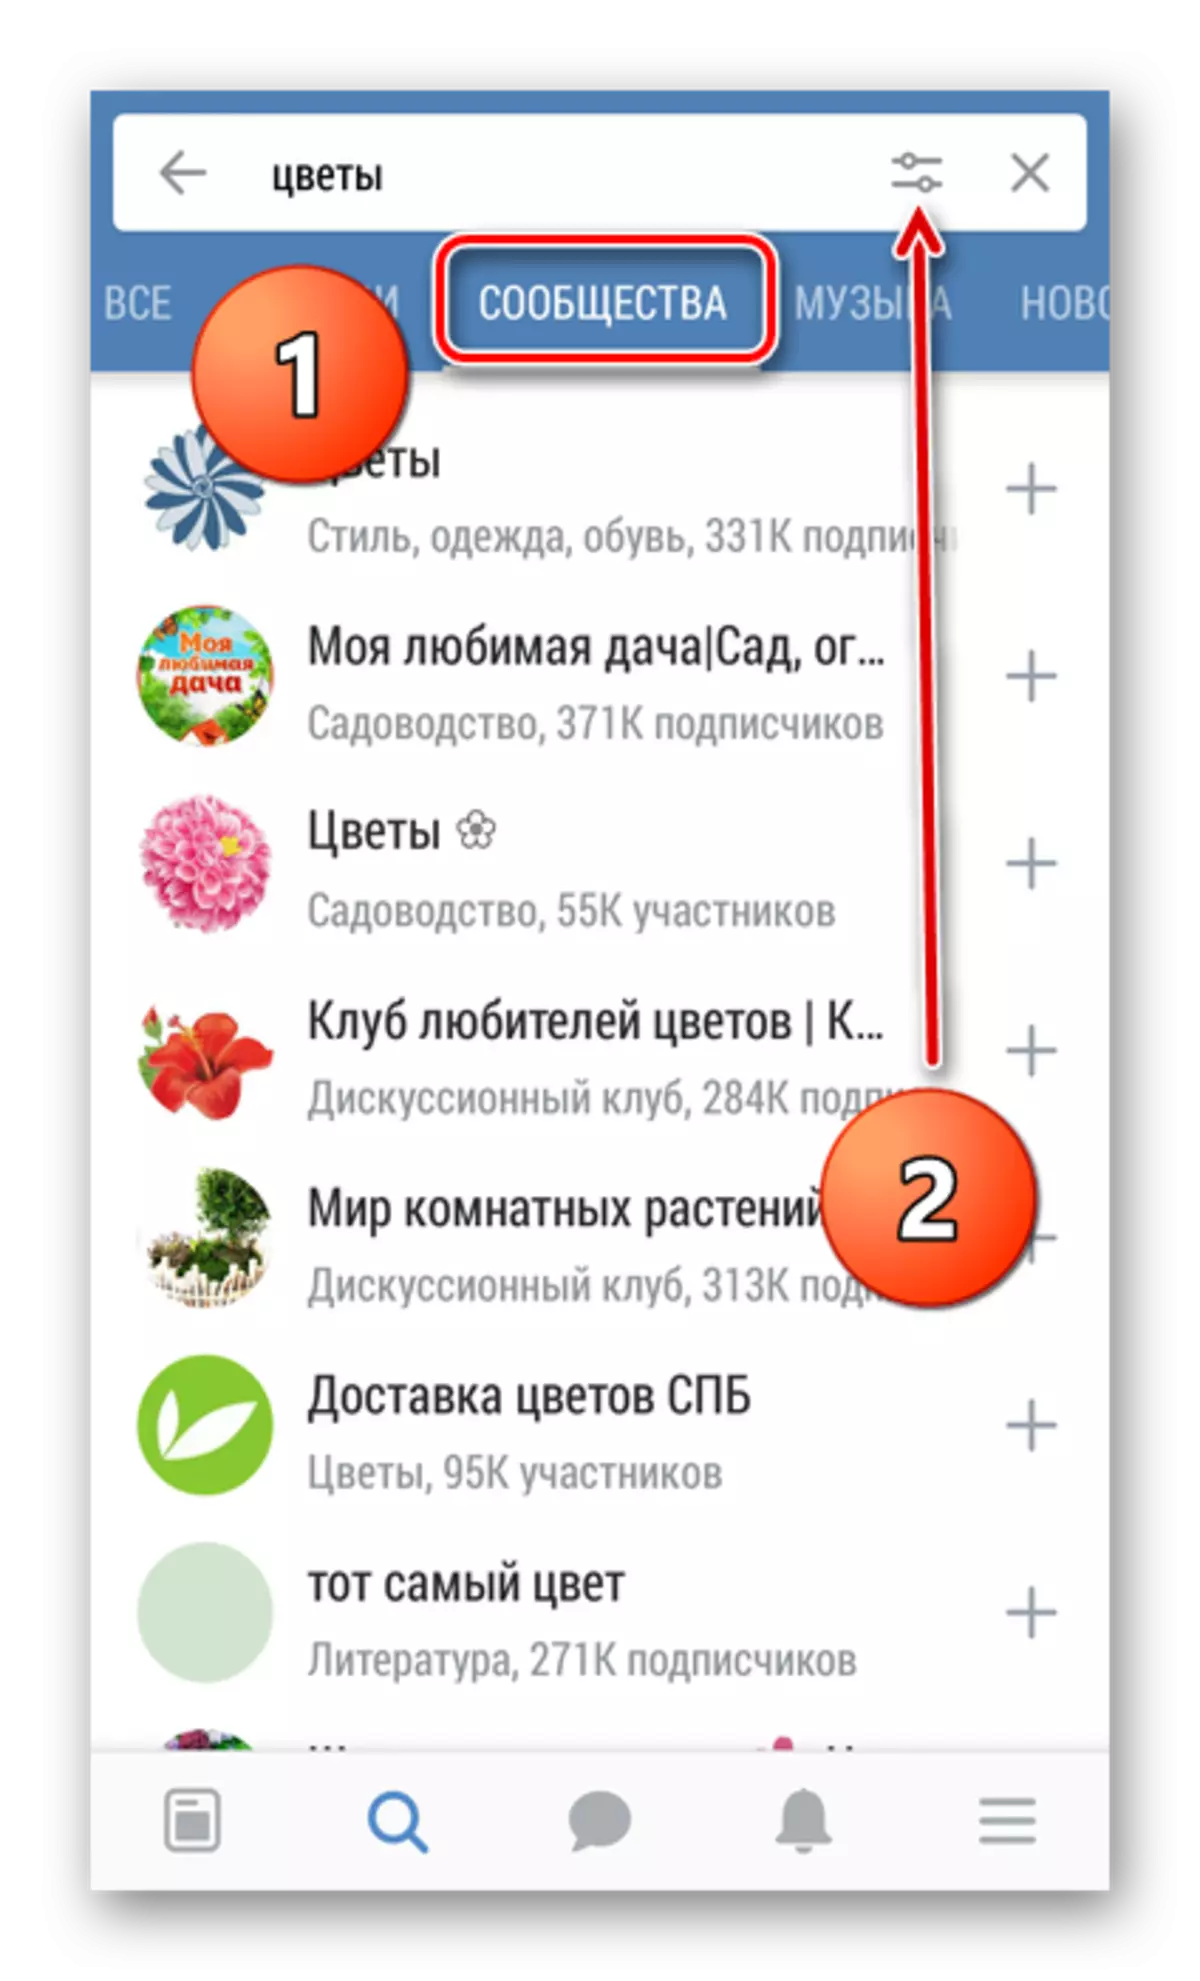 Chwilio am grwpiau yn Vkontakte